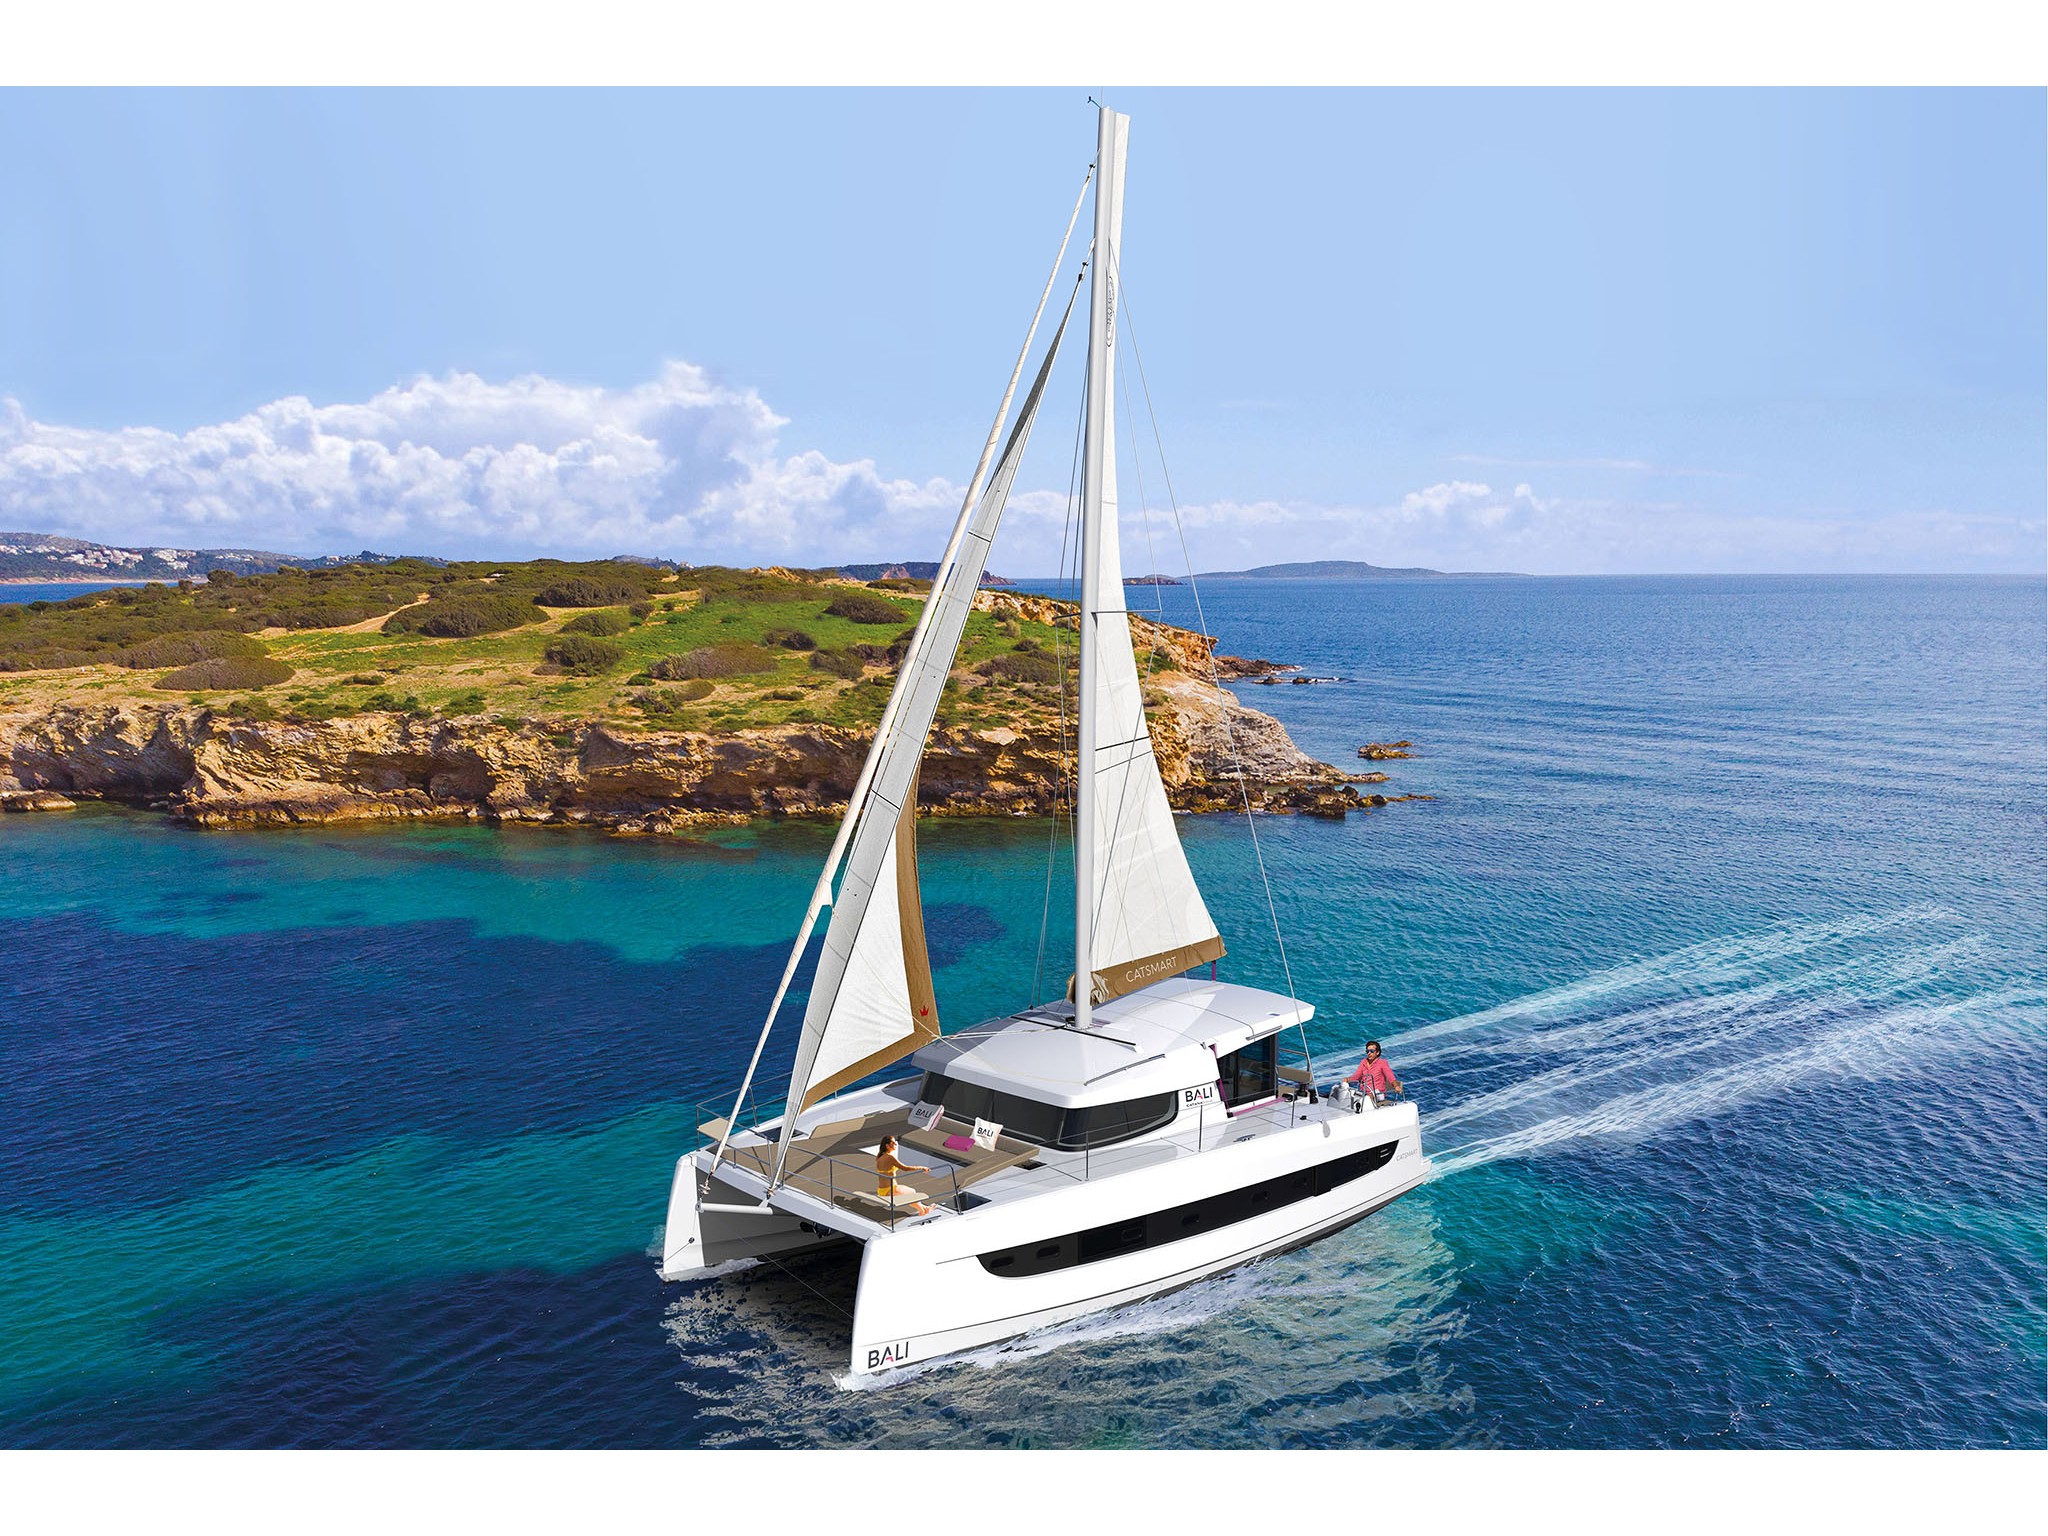 Bali Catsmart - Yacht Charter Golfo Aranci & Boat hire in Italy Sardinia Costa Smeralda Golfo Aranci Marina dell'Isola 1